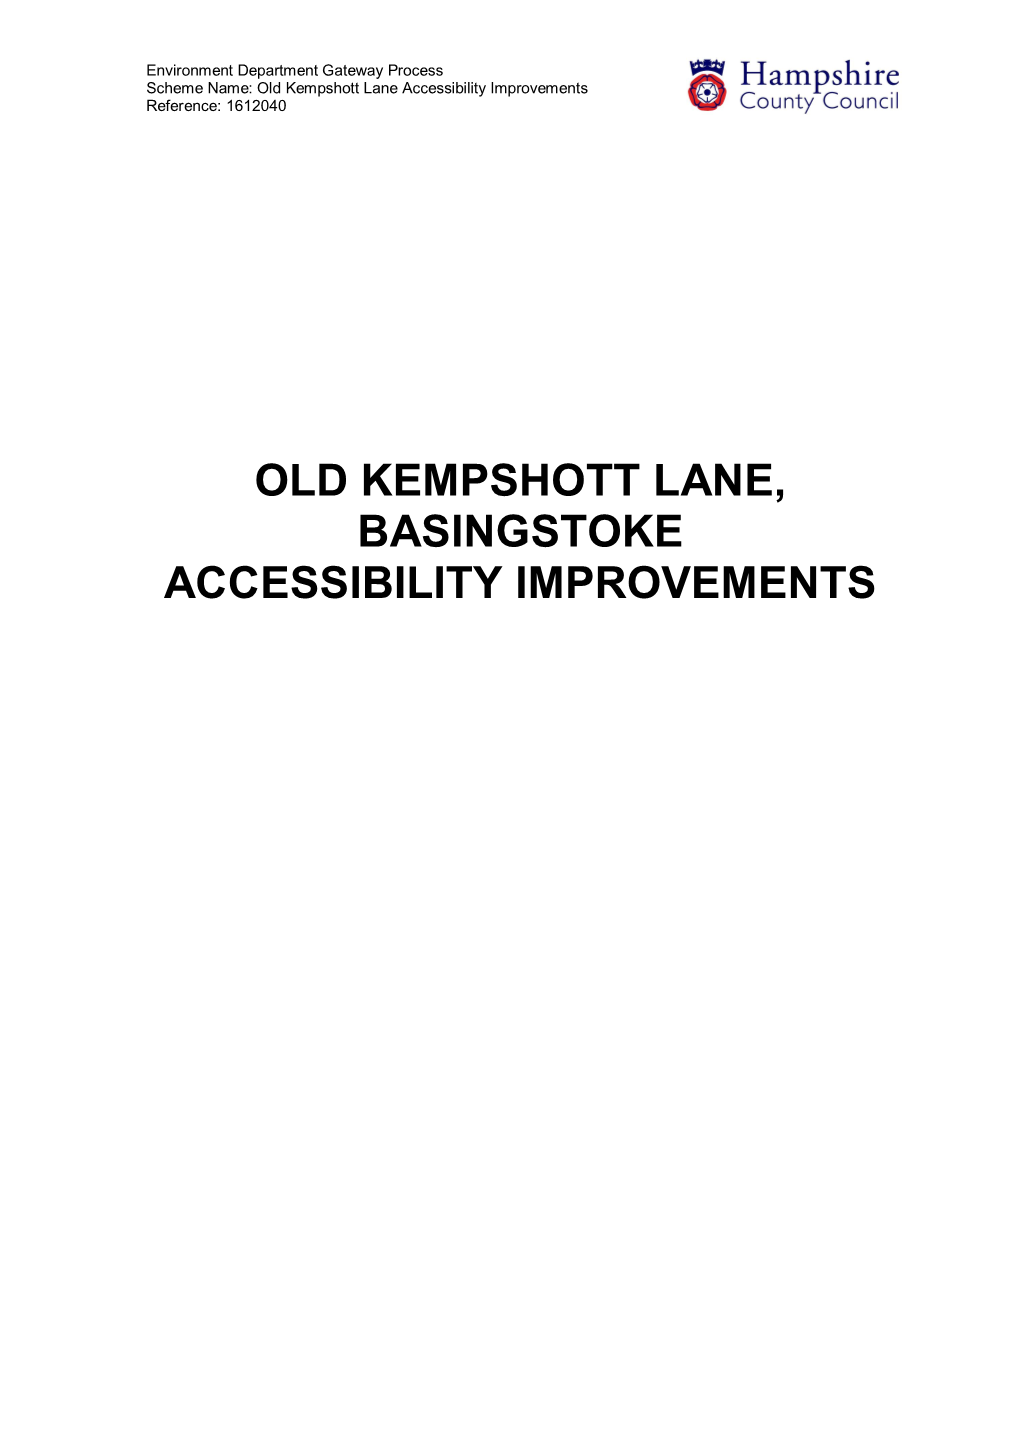 Old Kempshott Lane, Basingstoke Accessibility Improvements